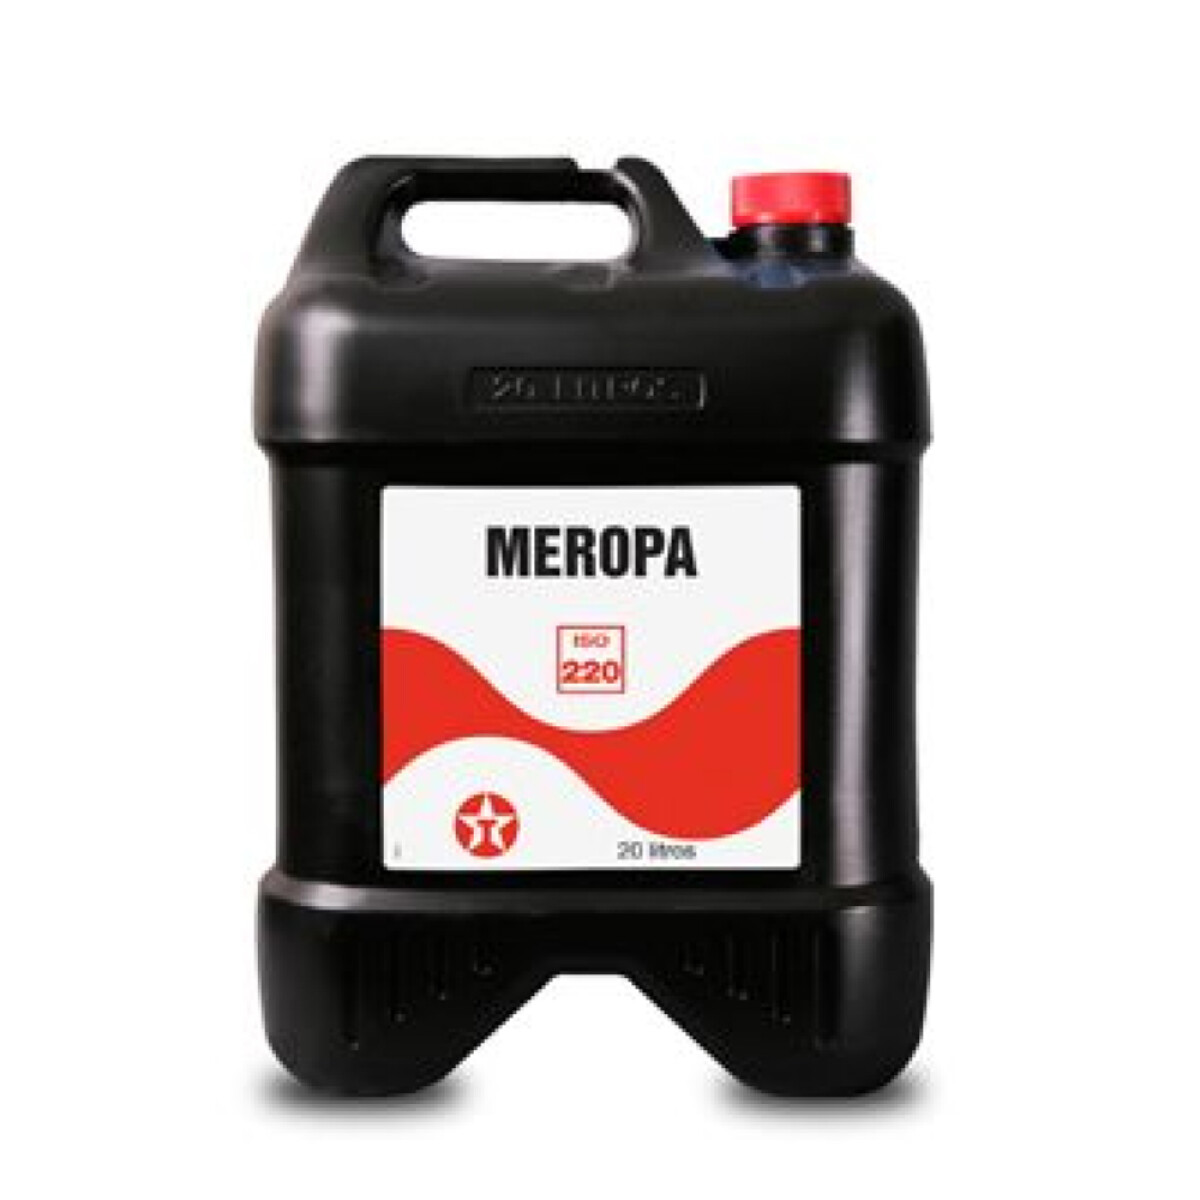 MEROPA 220 B.17.64LT 